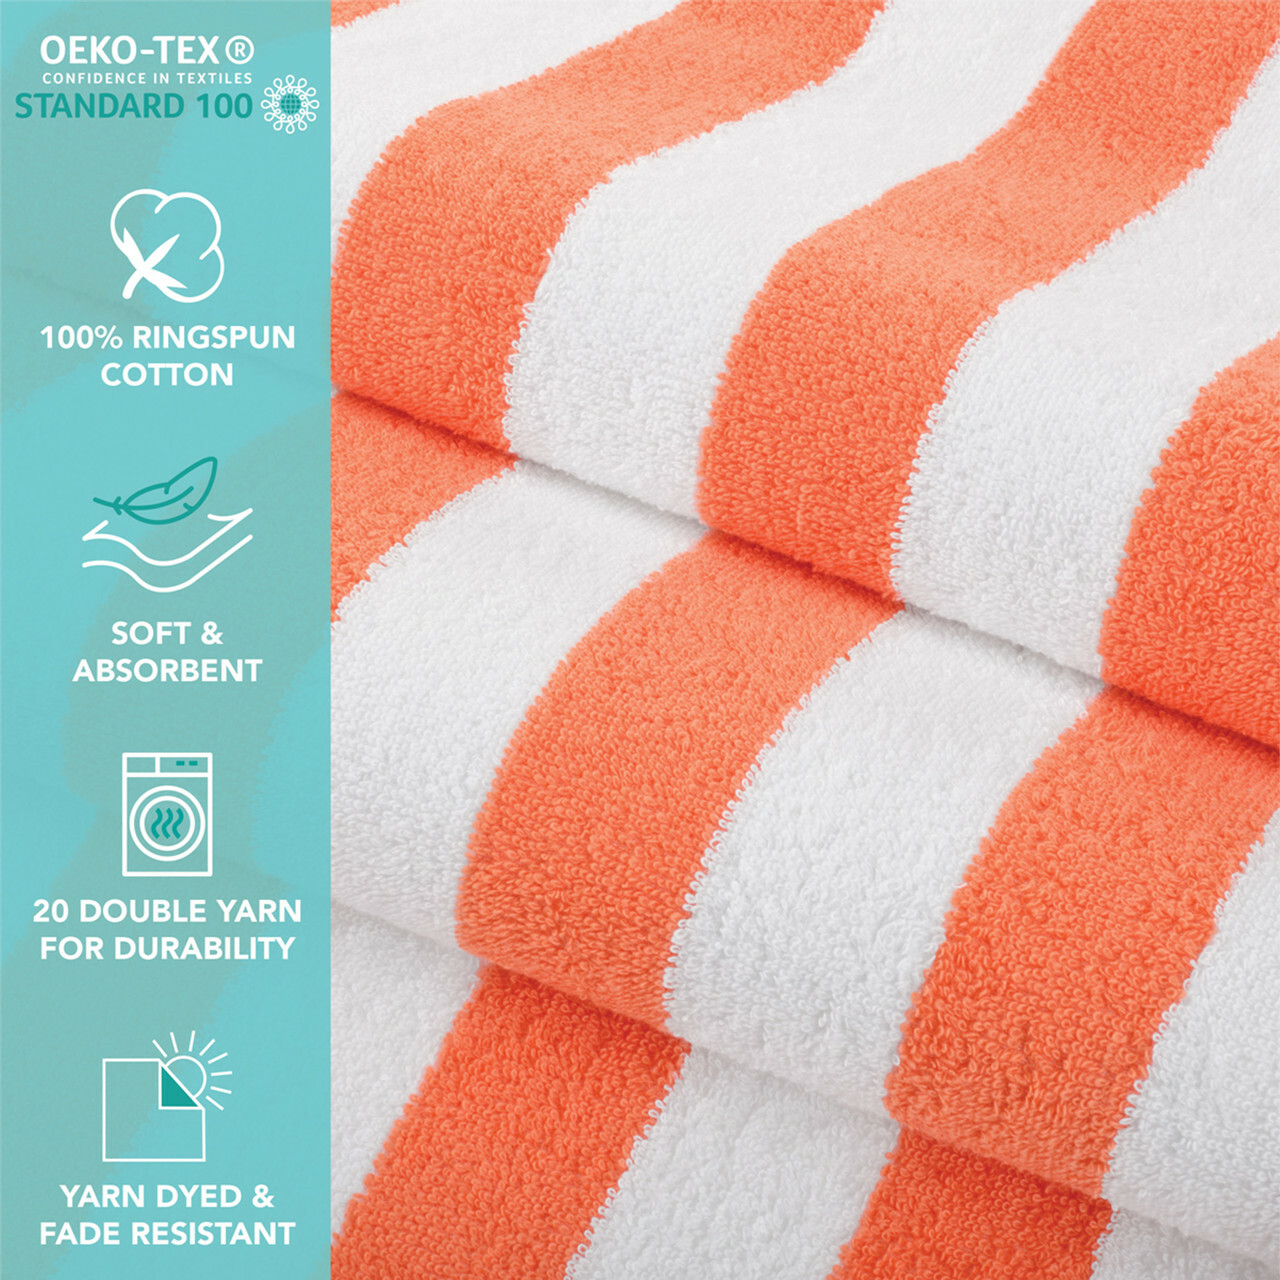 Cabana Towel Details